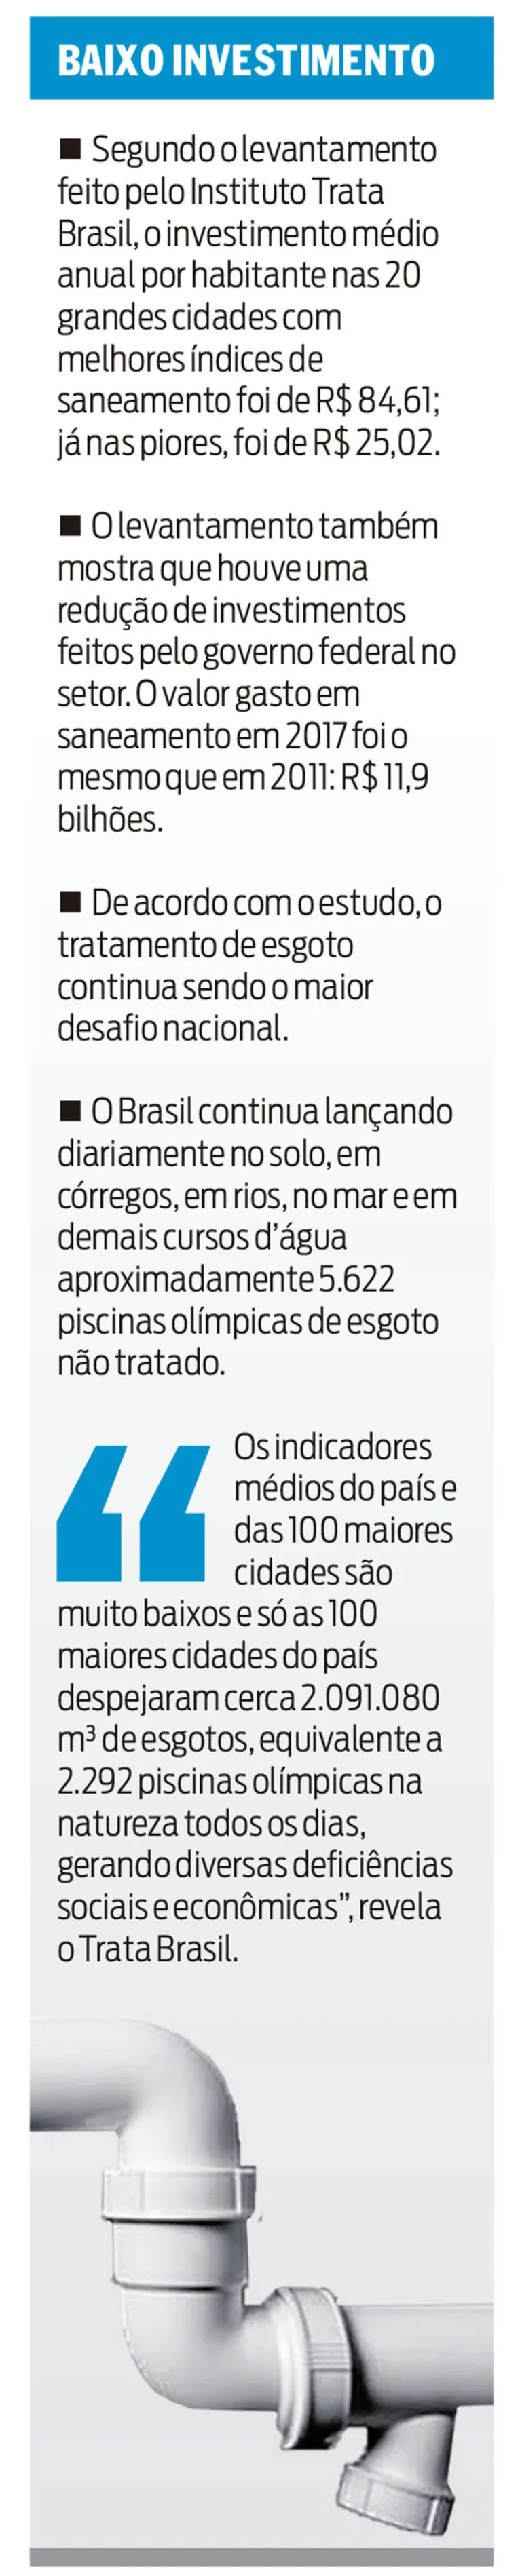 Belém teve o pior tratamento de esgoto entre as capitais em 2017